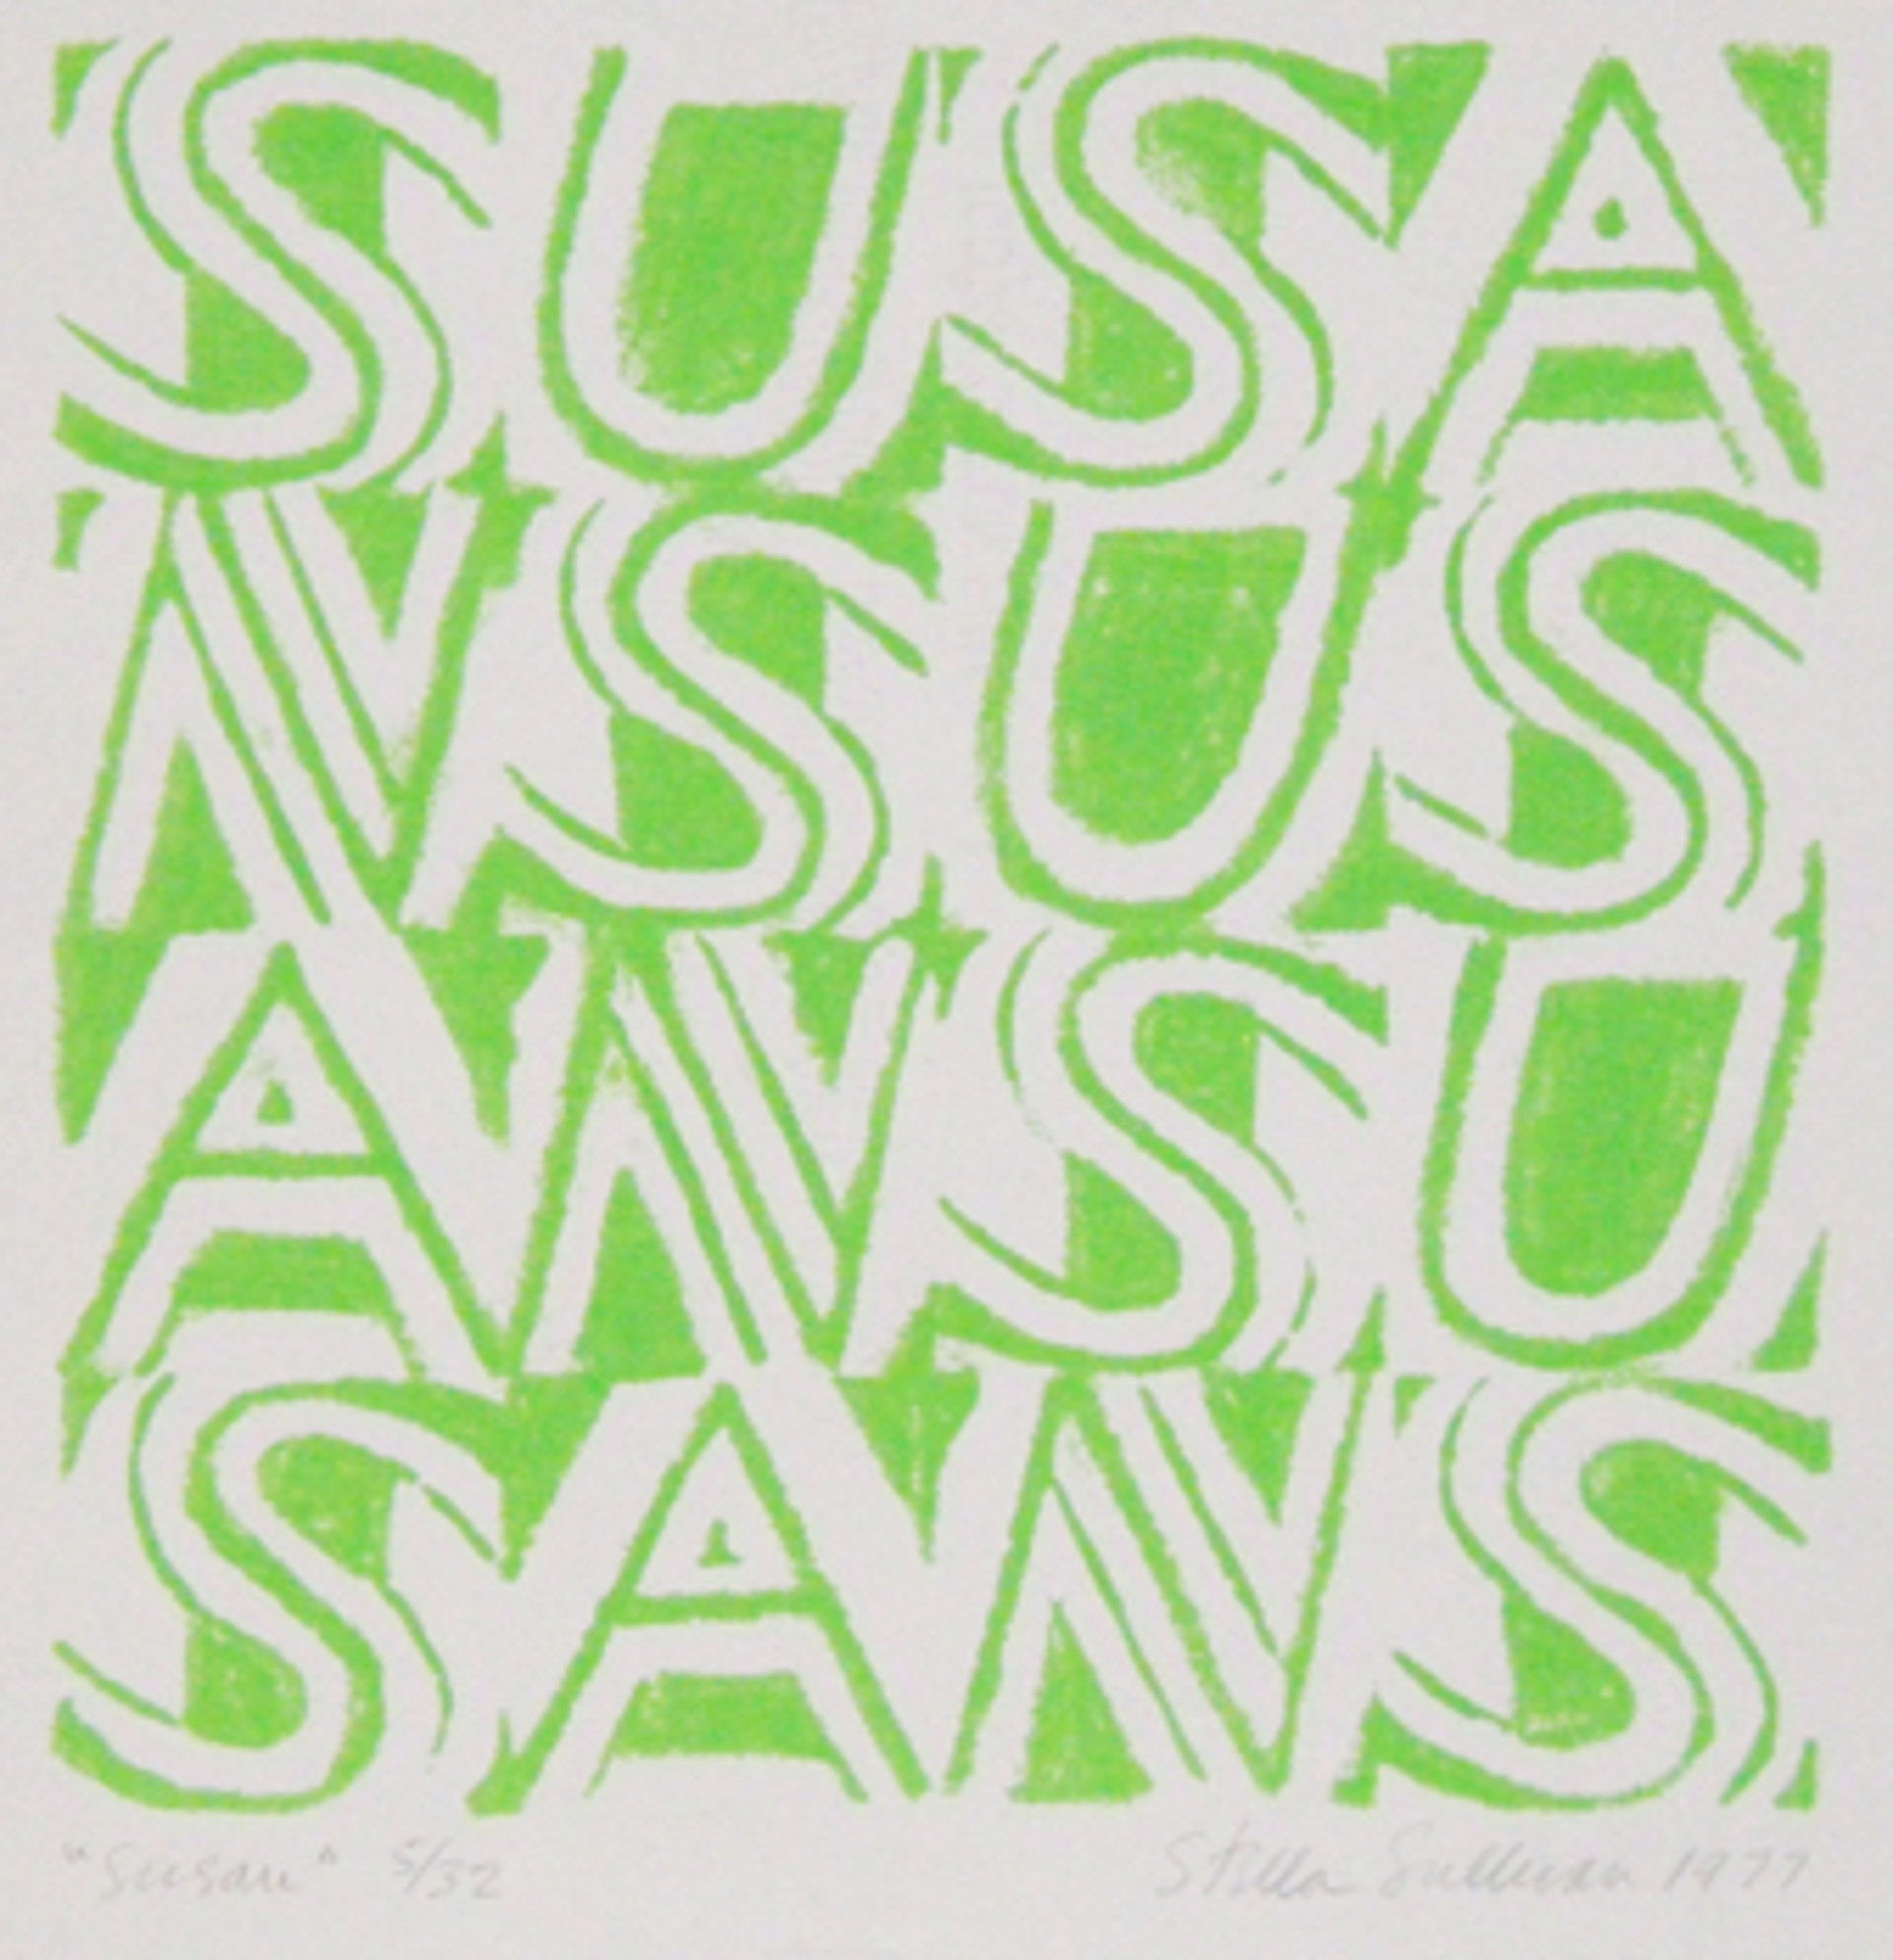 Susan by Stella Sullivan